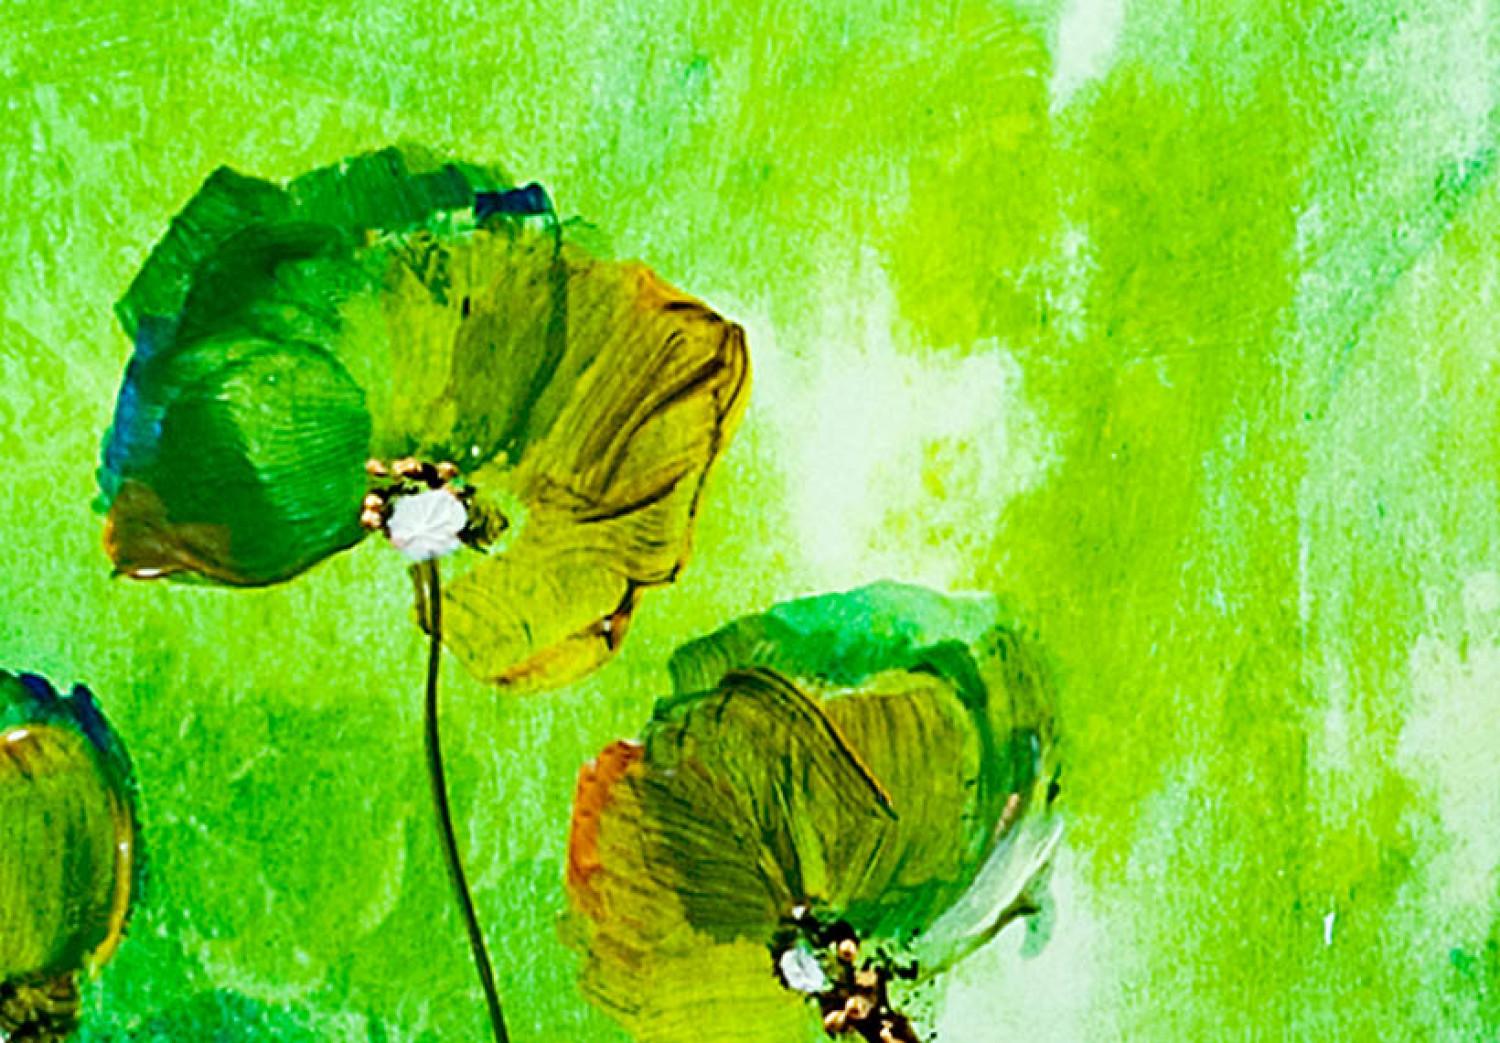 Cuadro Flores verdes (3 piezas) - composición con efecto de prado jugoso